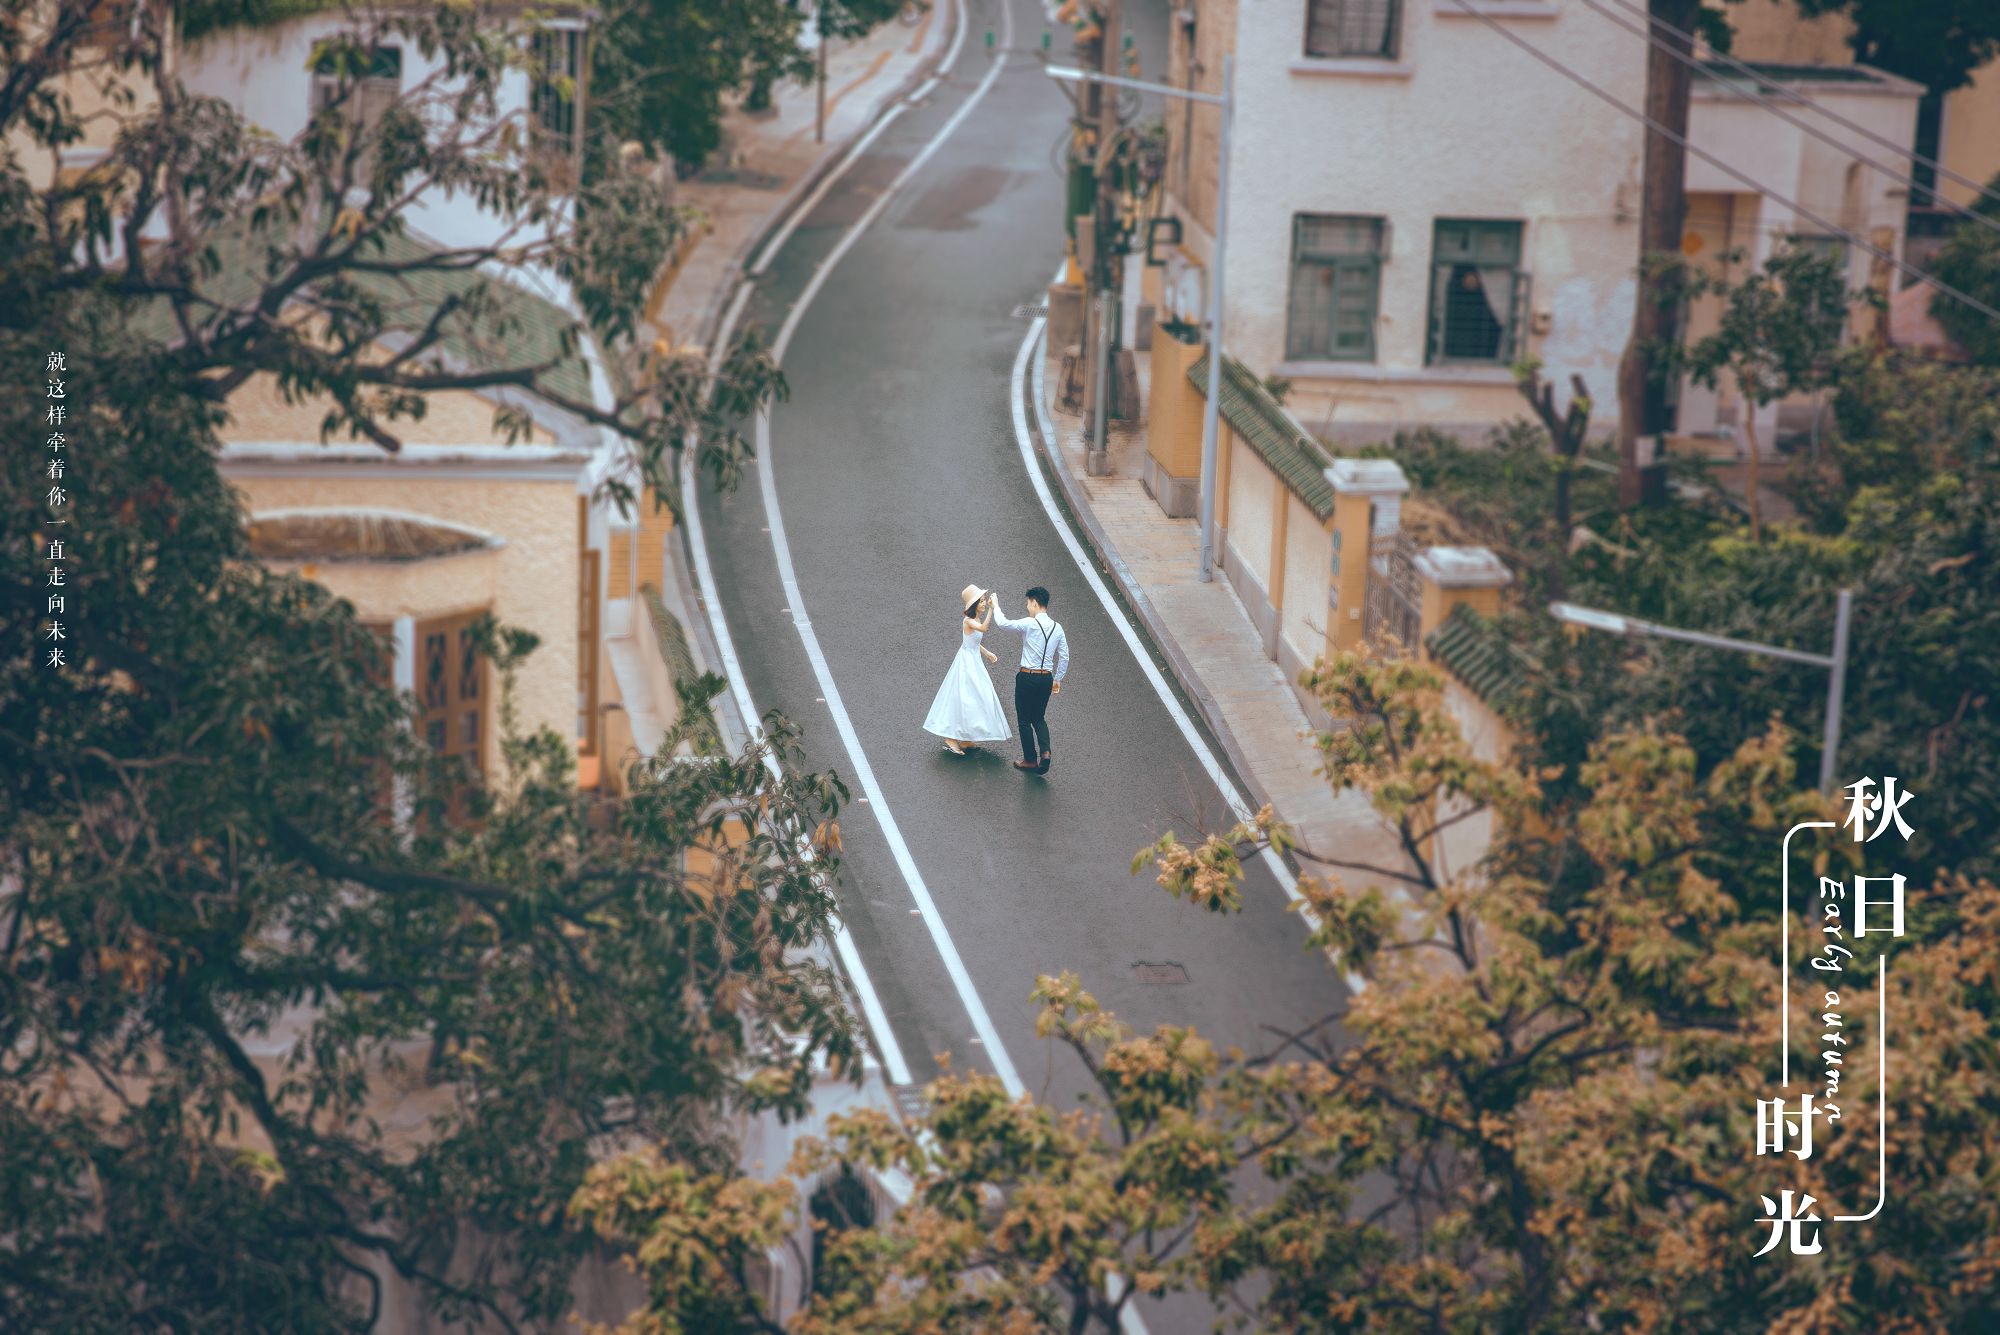 2018年11月广州结婚照,广州婚纱照,婚纱照图片